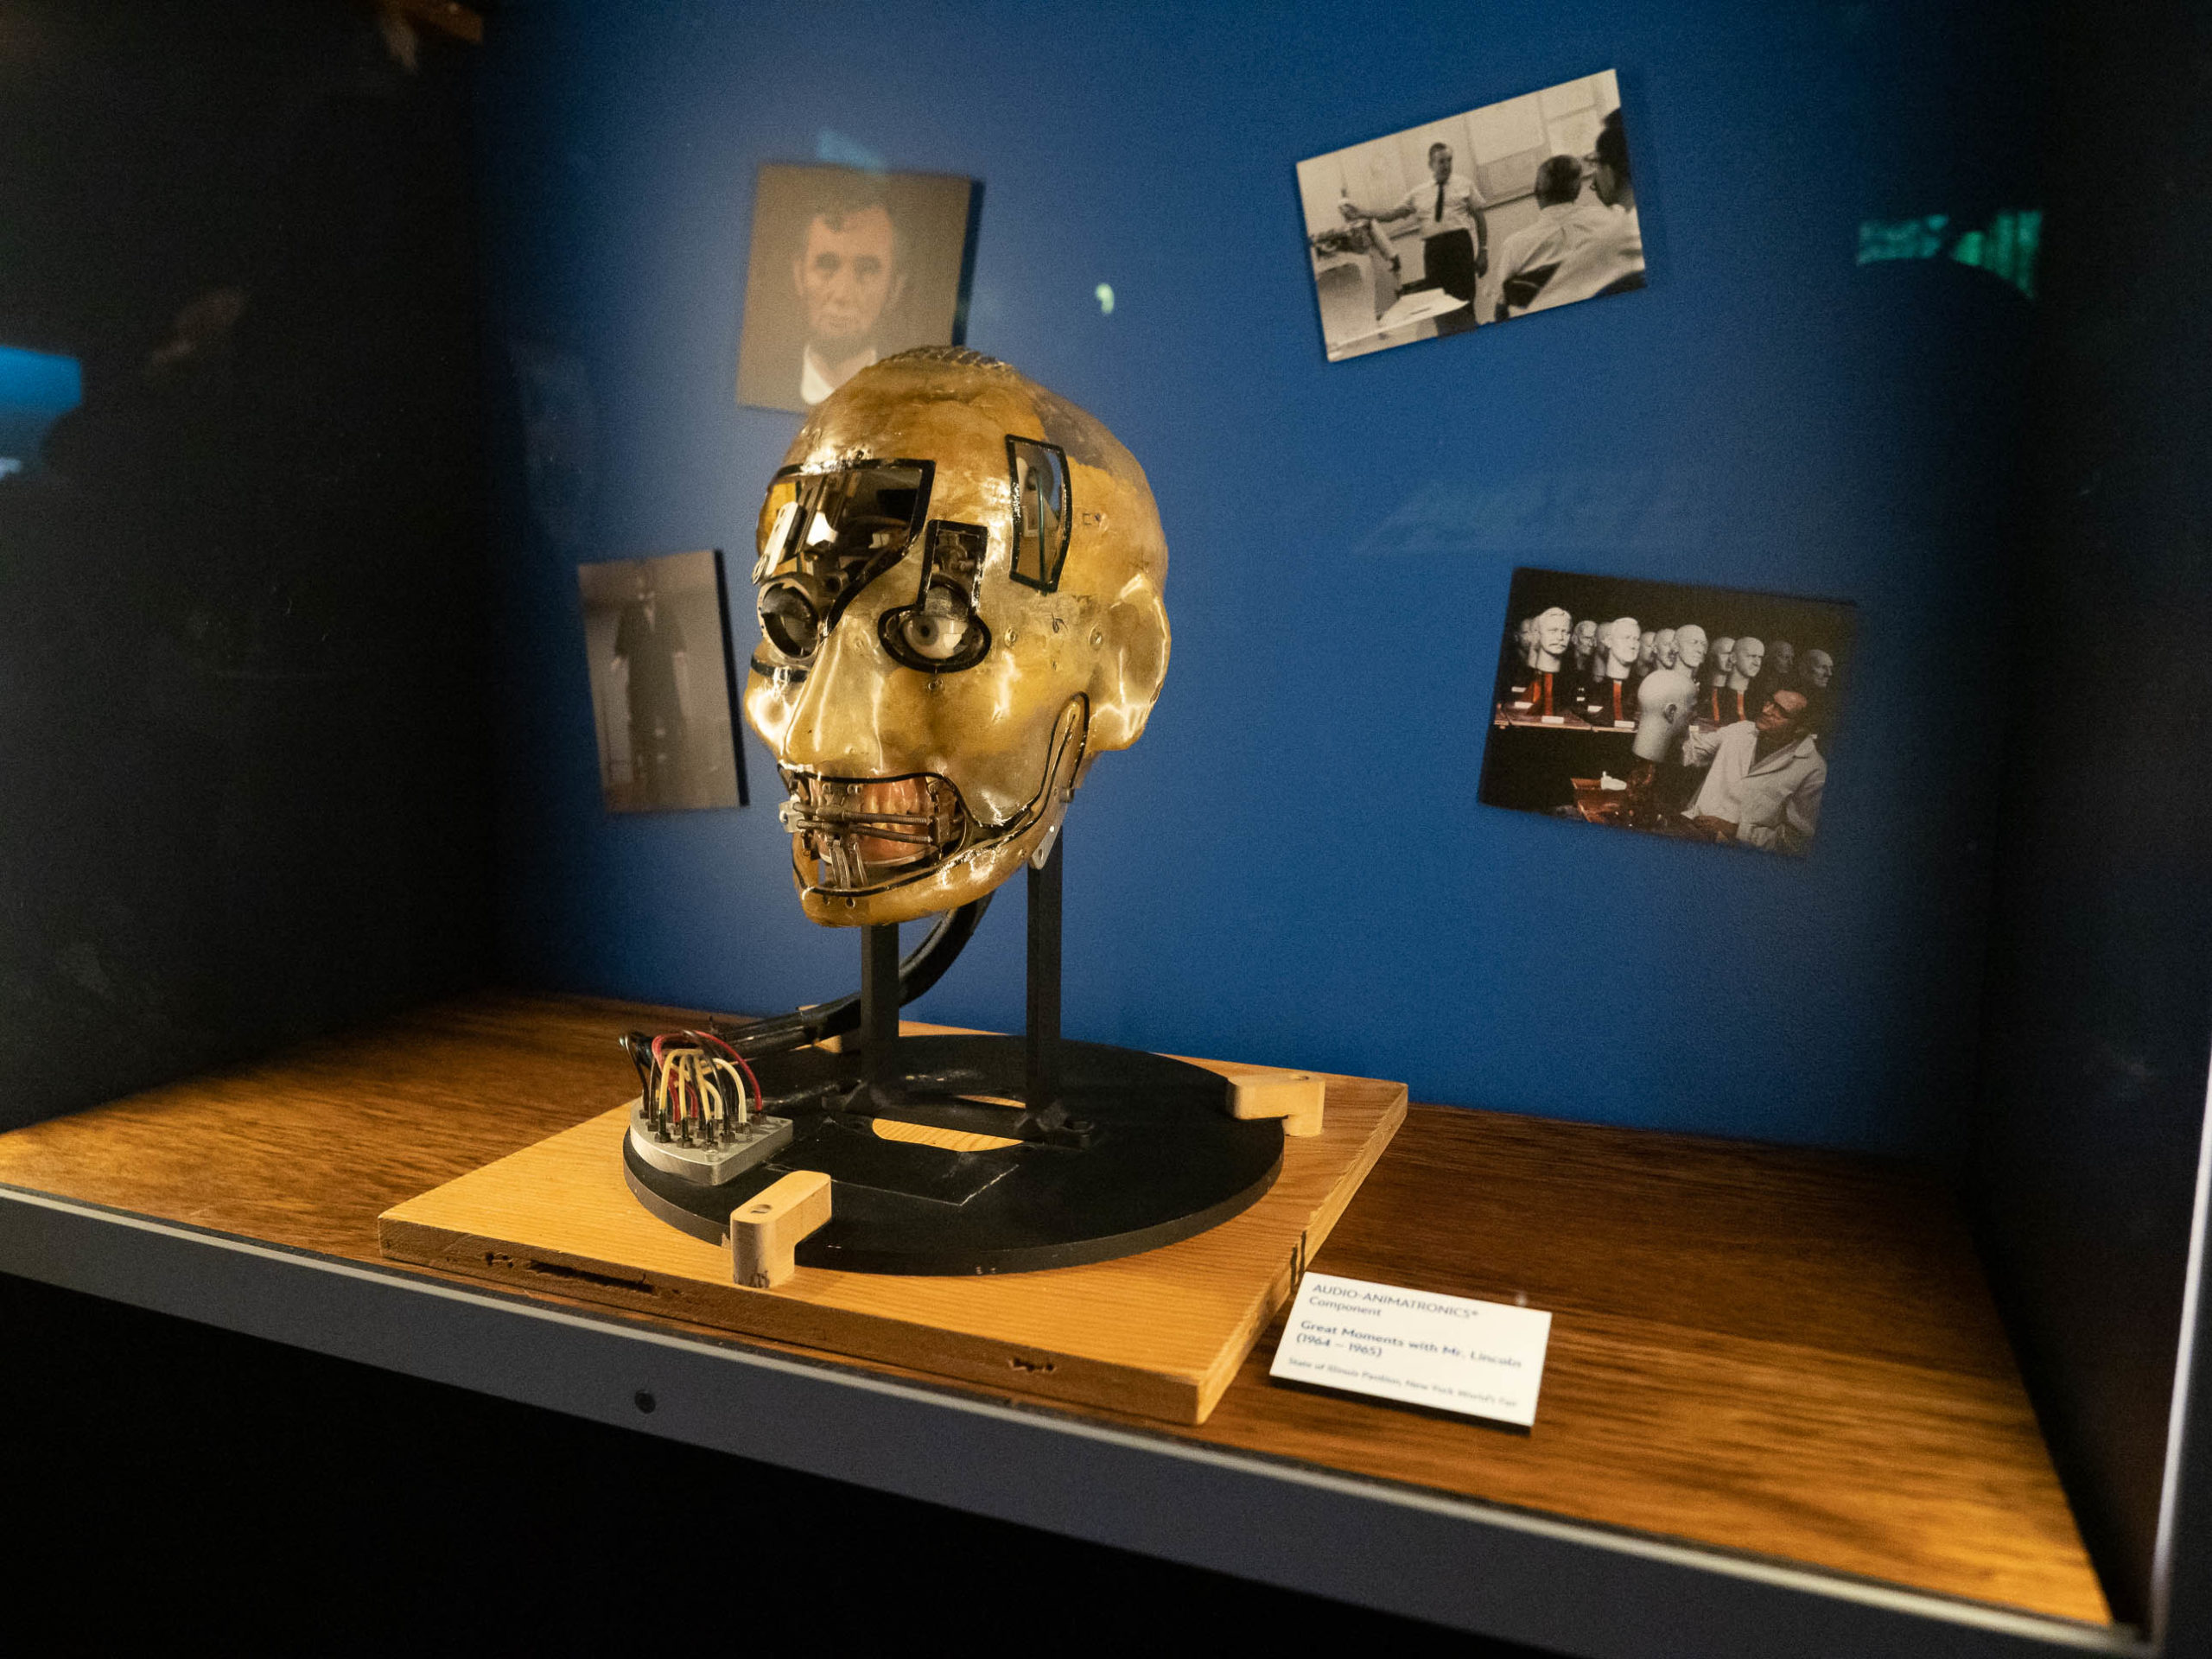 Disney100: The Exhibition Abraham Lincoln audio animatronic